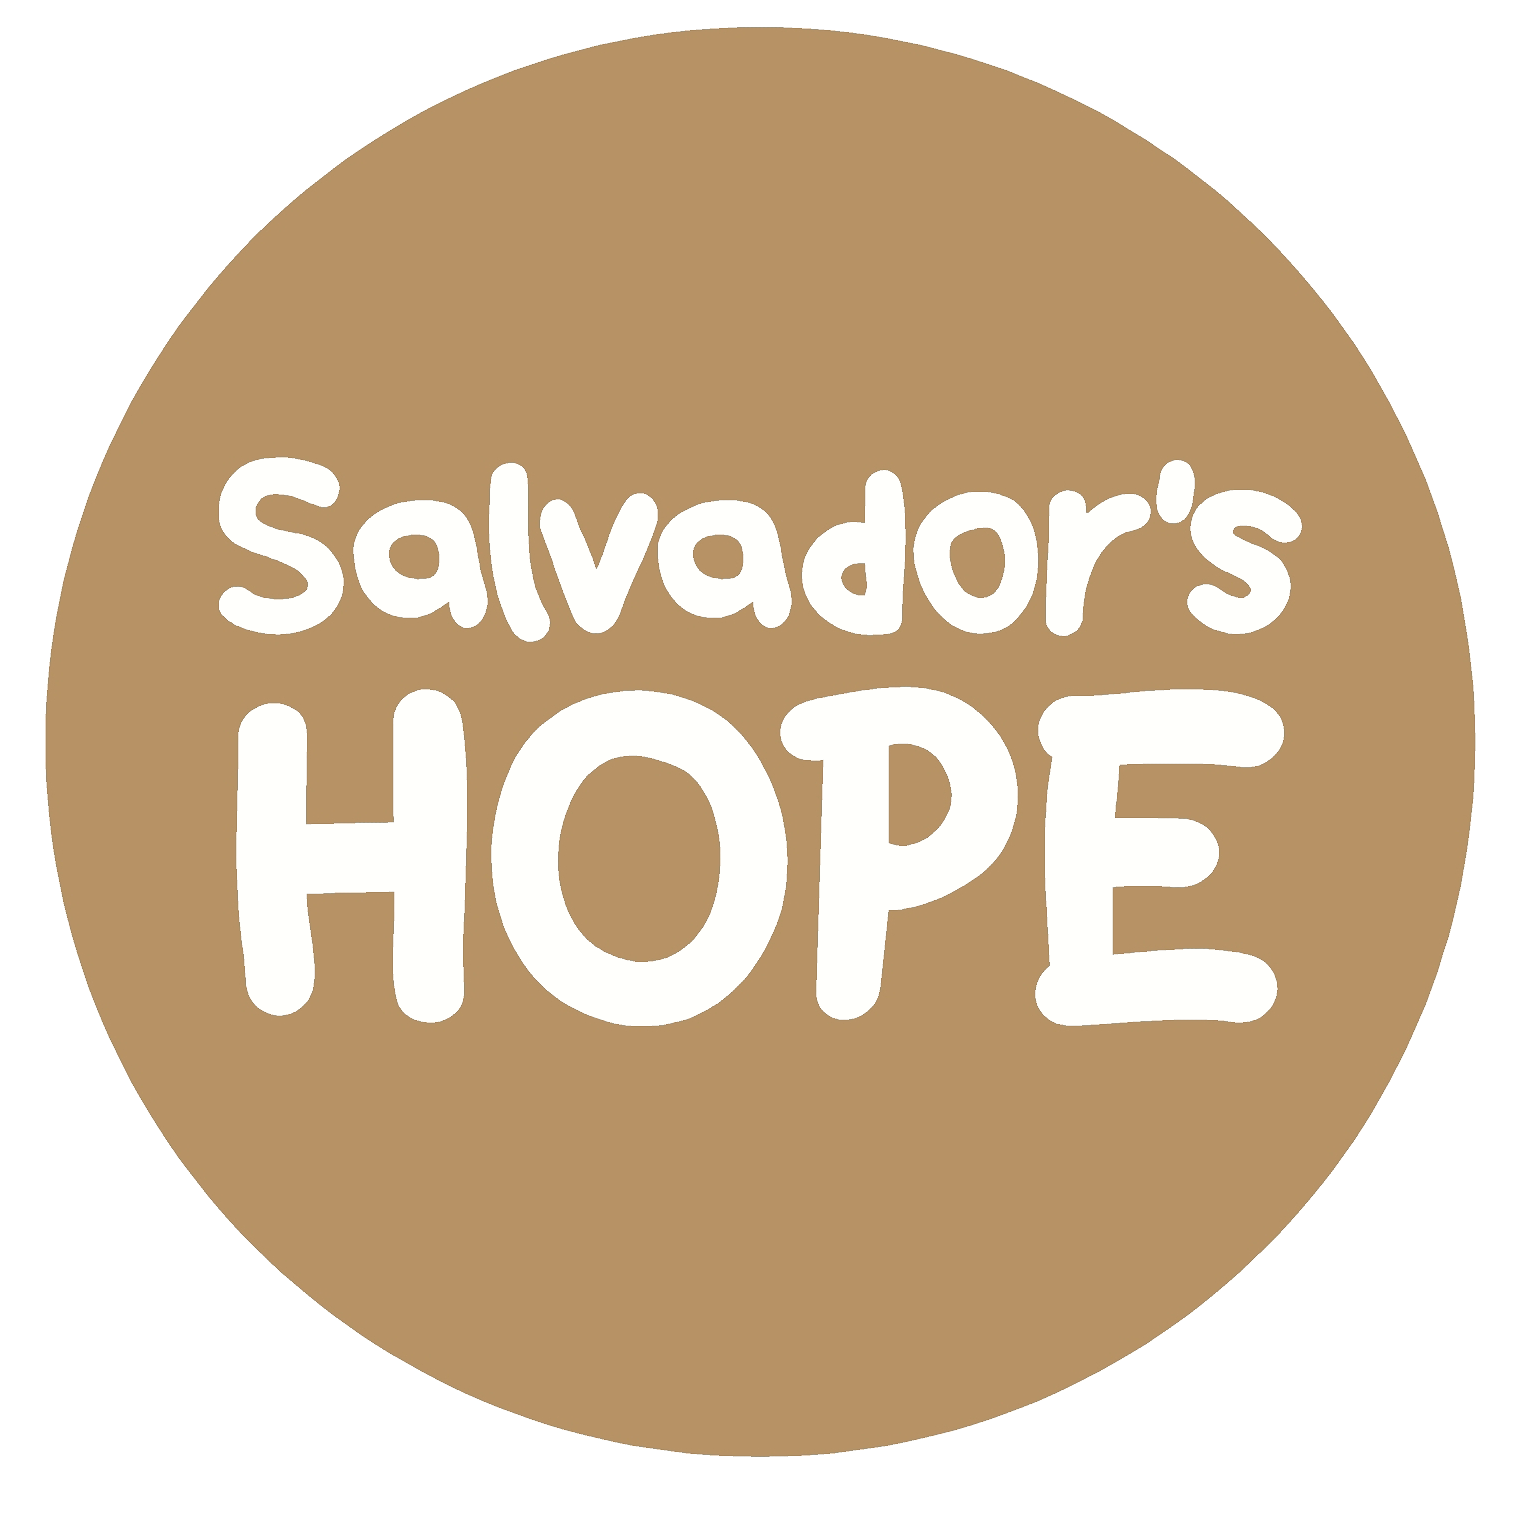 Salvador's HOPE logo